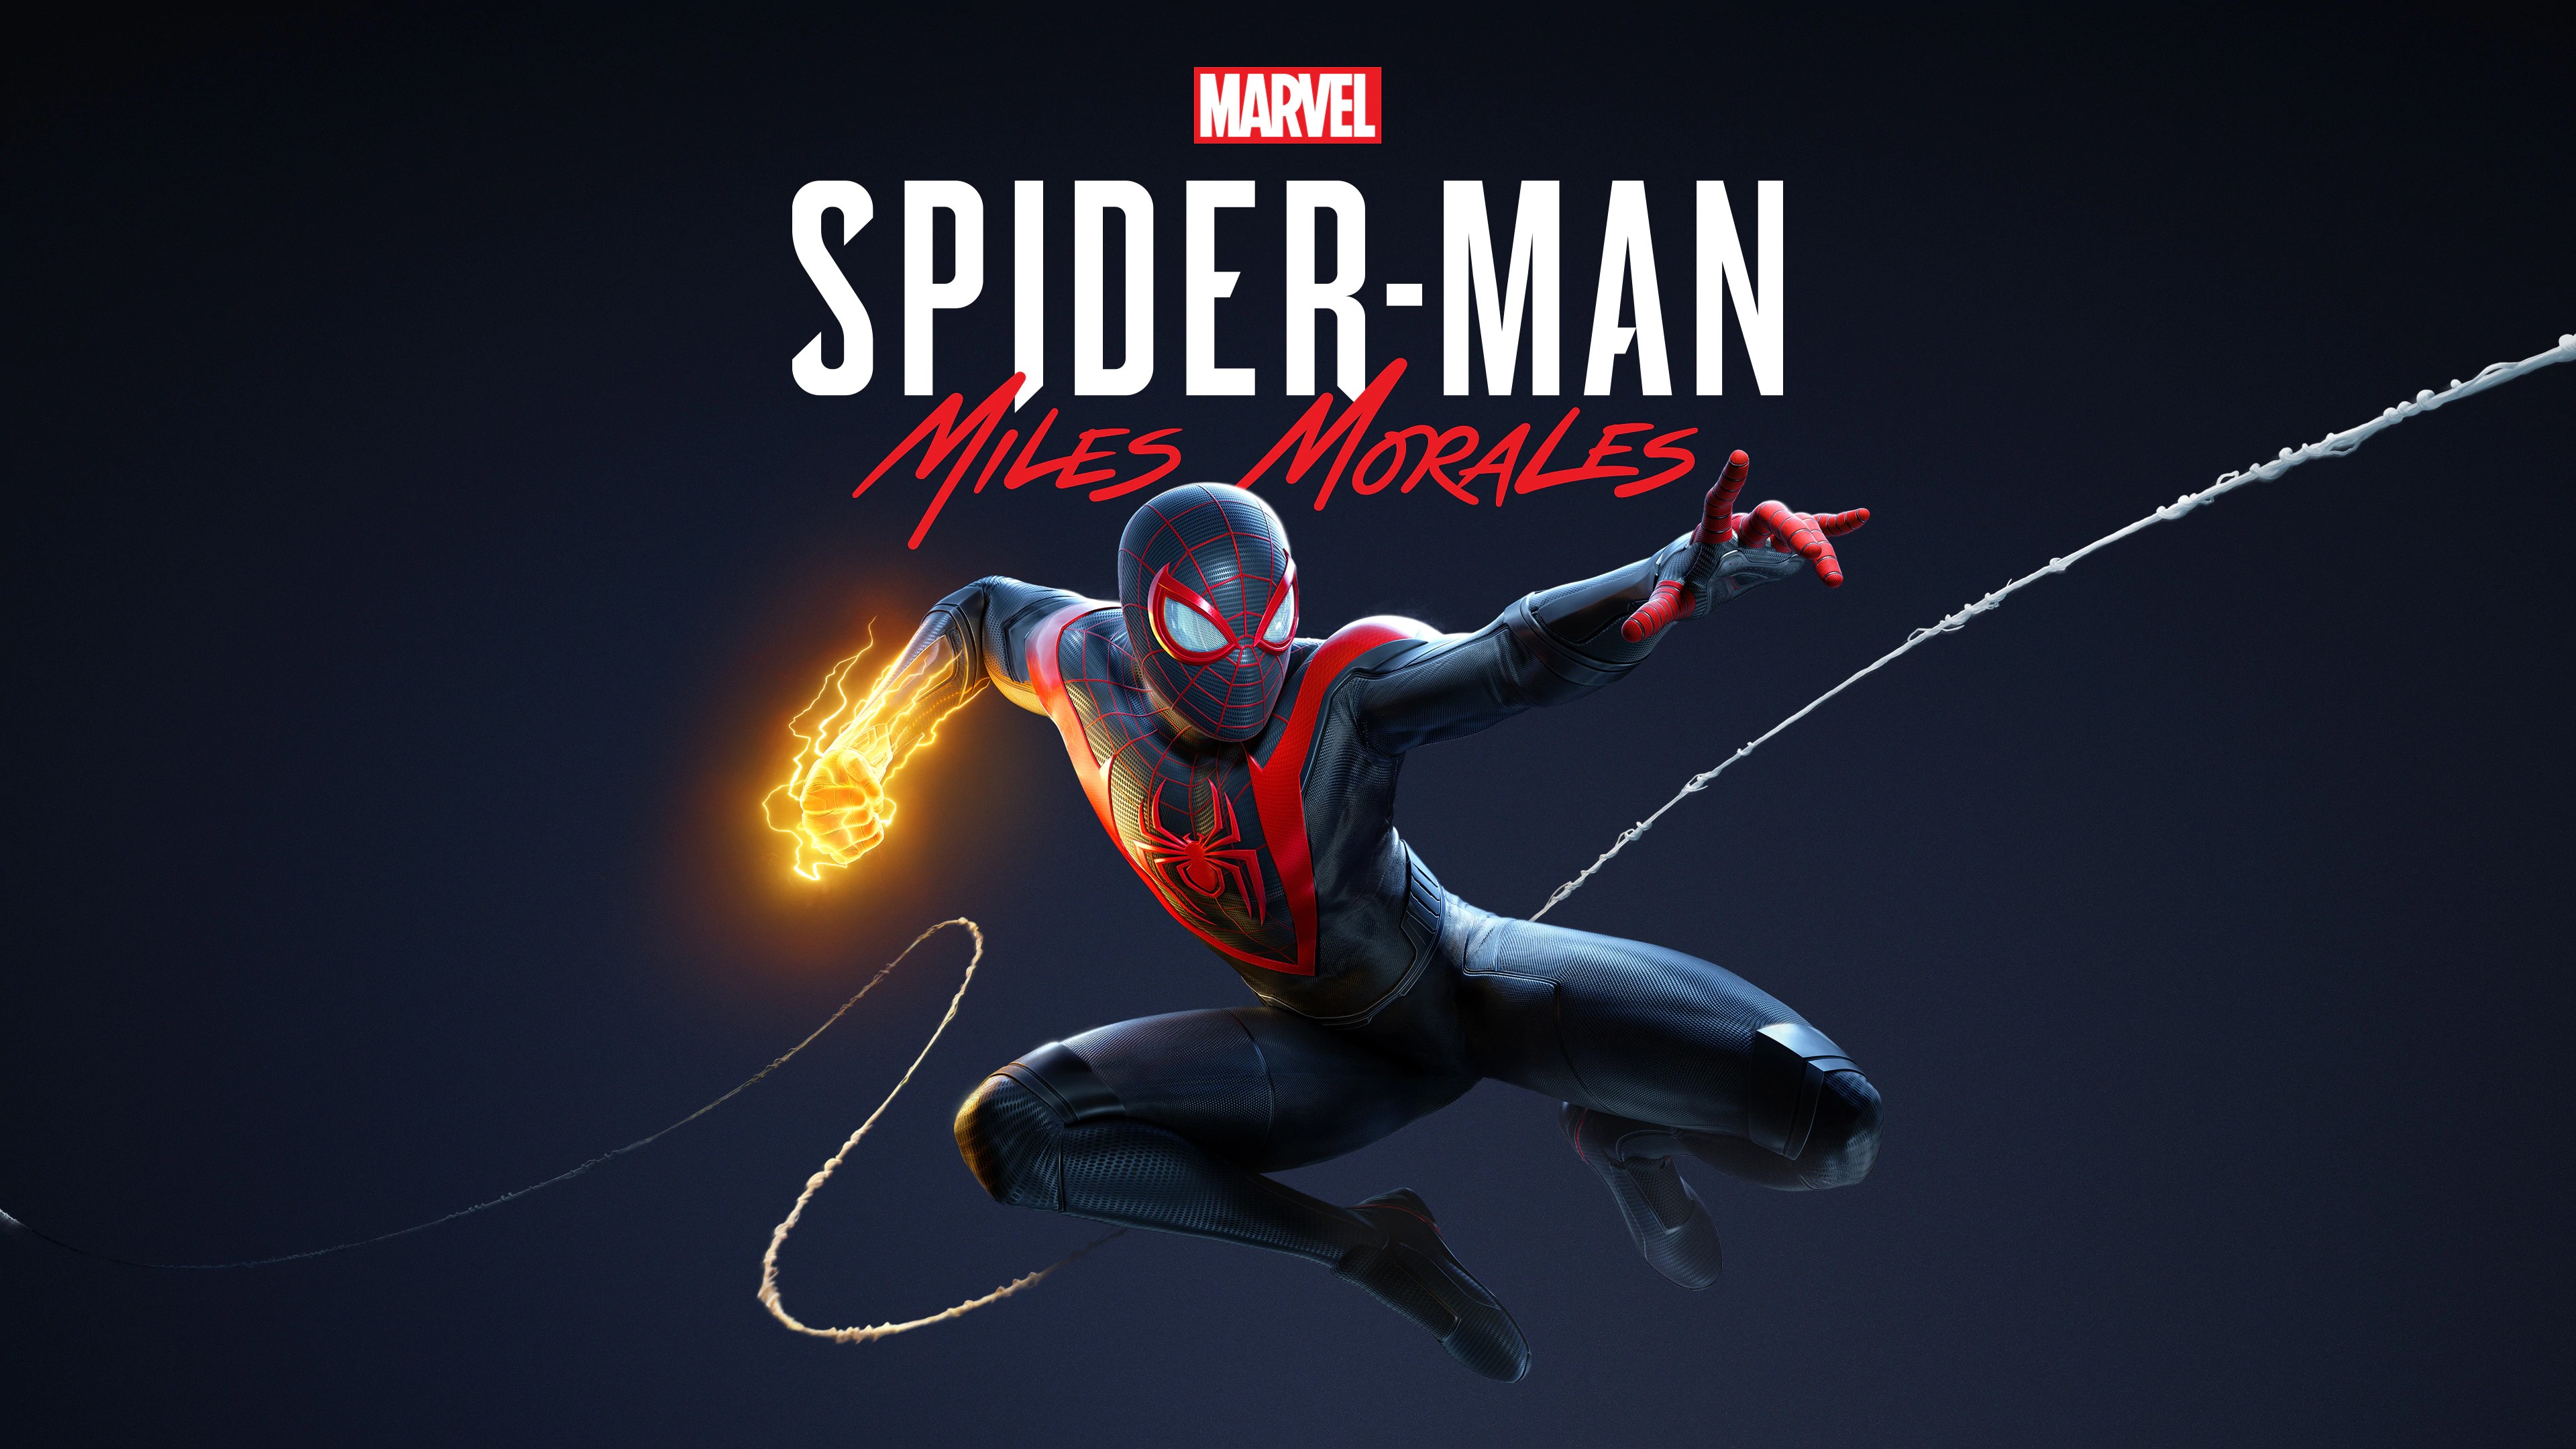 Marvel's Человек-паук /// Spider-Man: Miles Morales ( прохождение 6 )